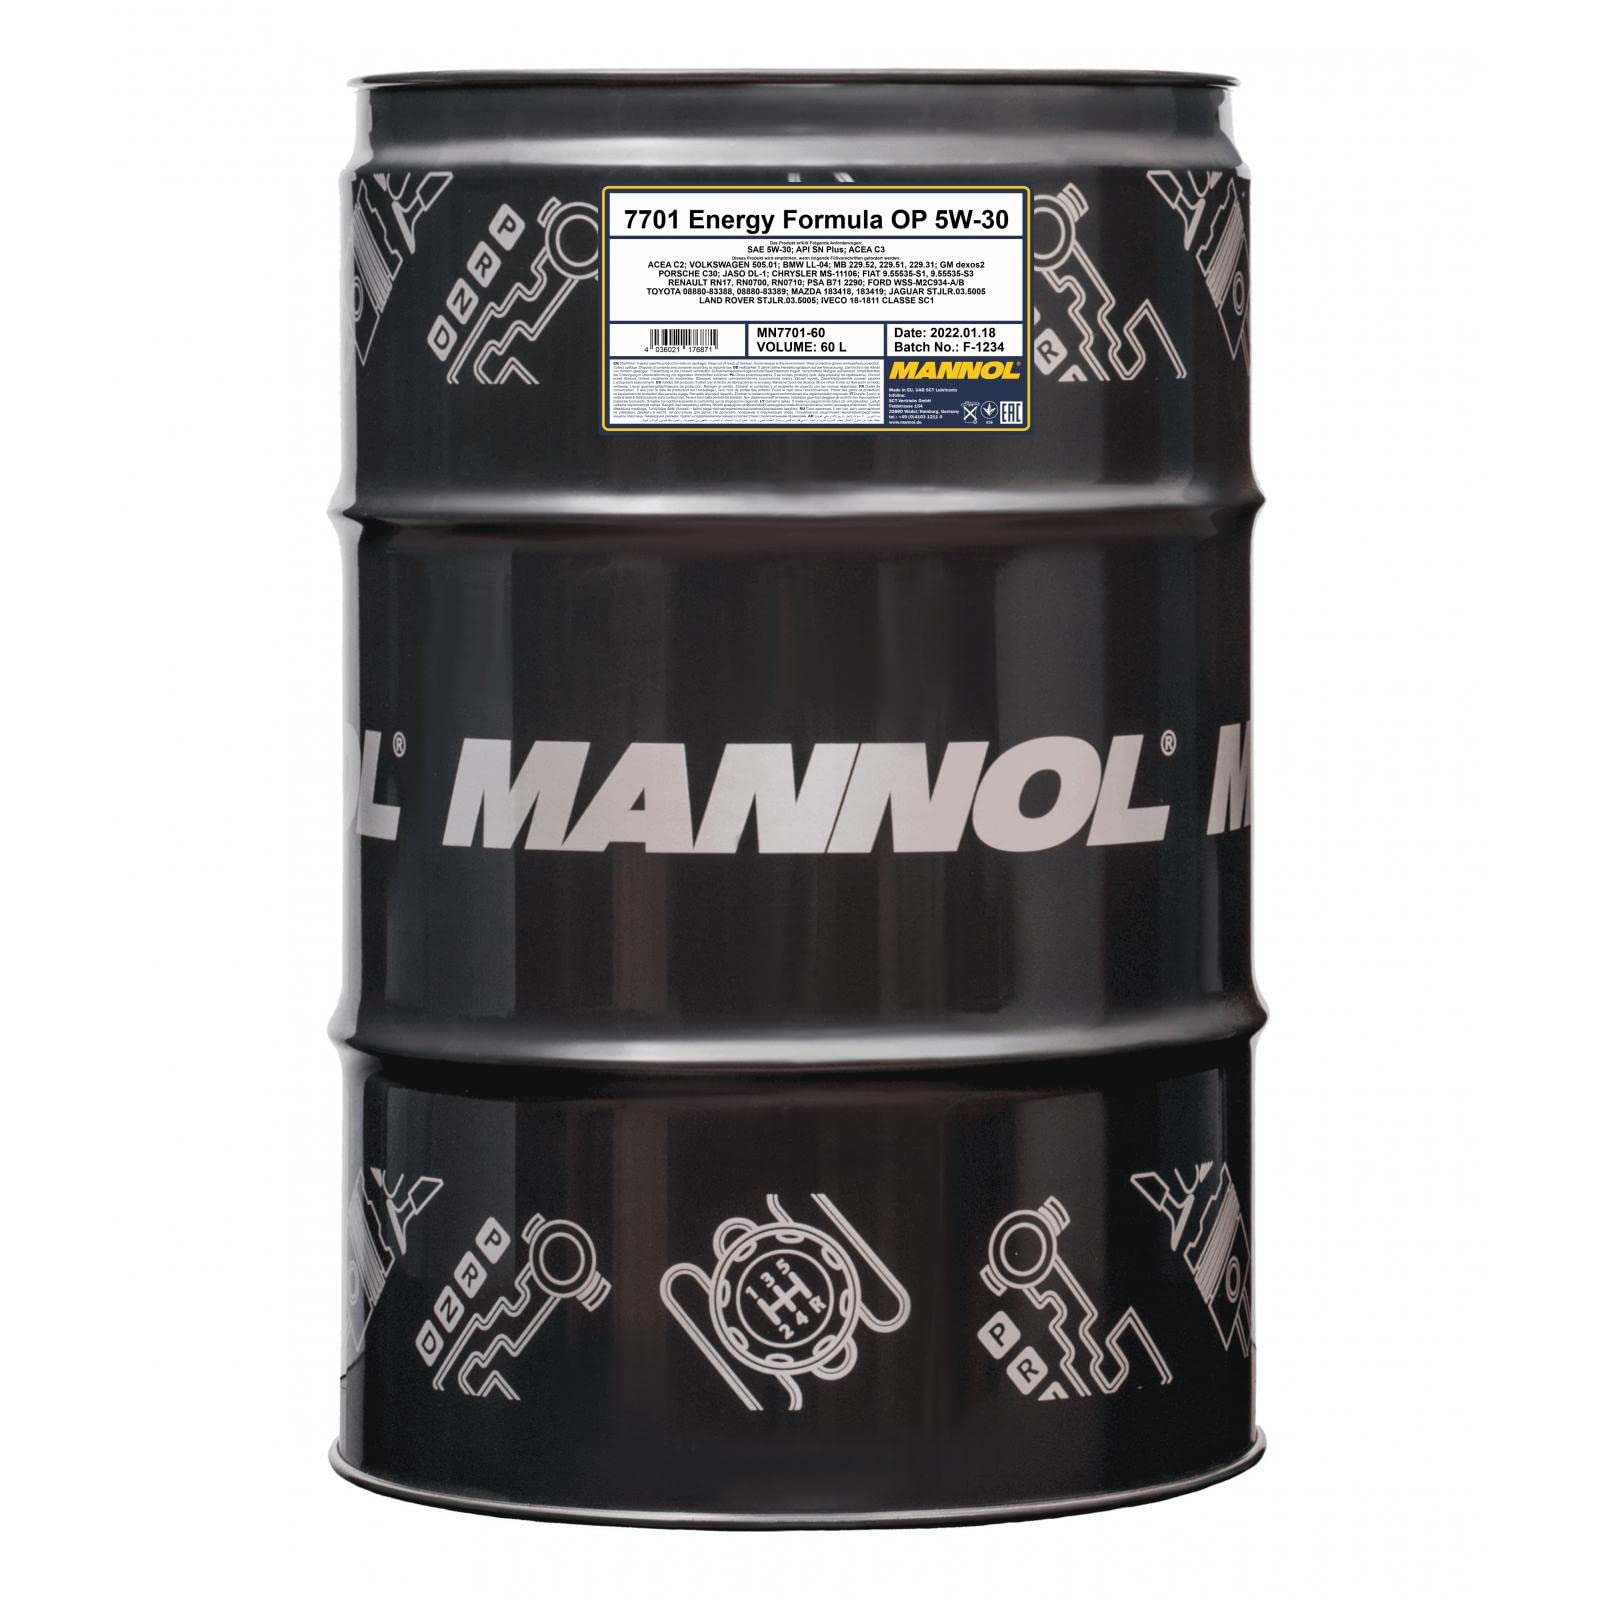 60 Liter MANNOL ENERGY 5W-30 FORMULA OP 5W-30 Engine Oil Motoröl 7701 von MANNOL